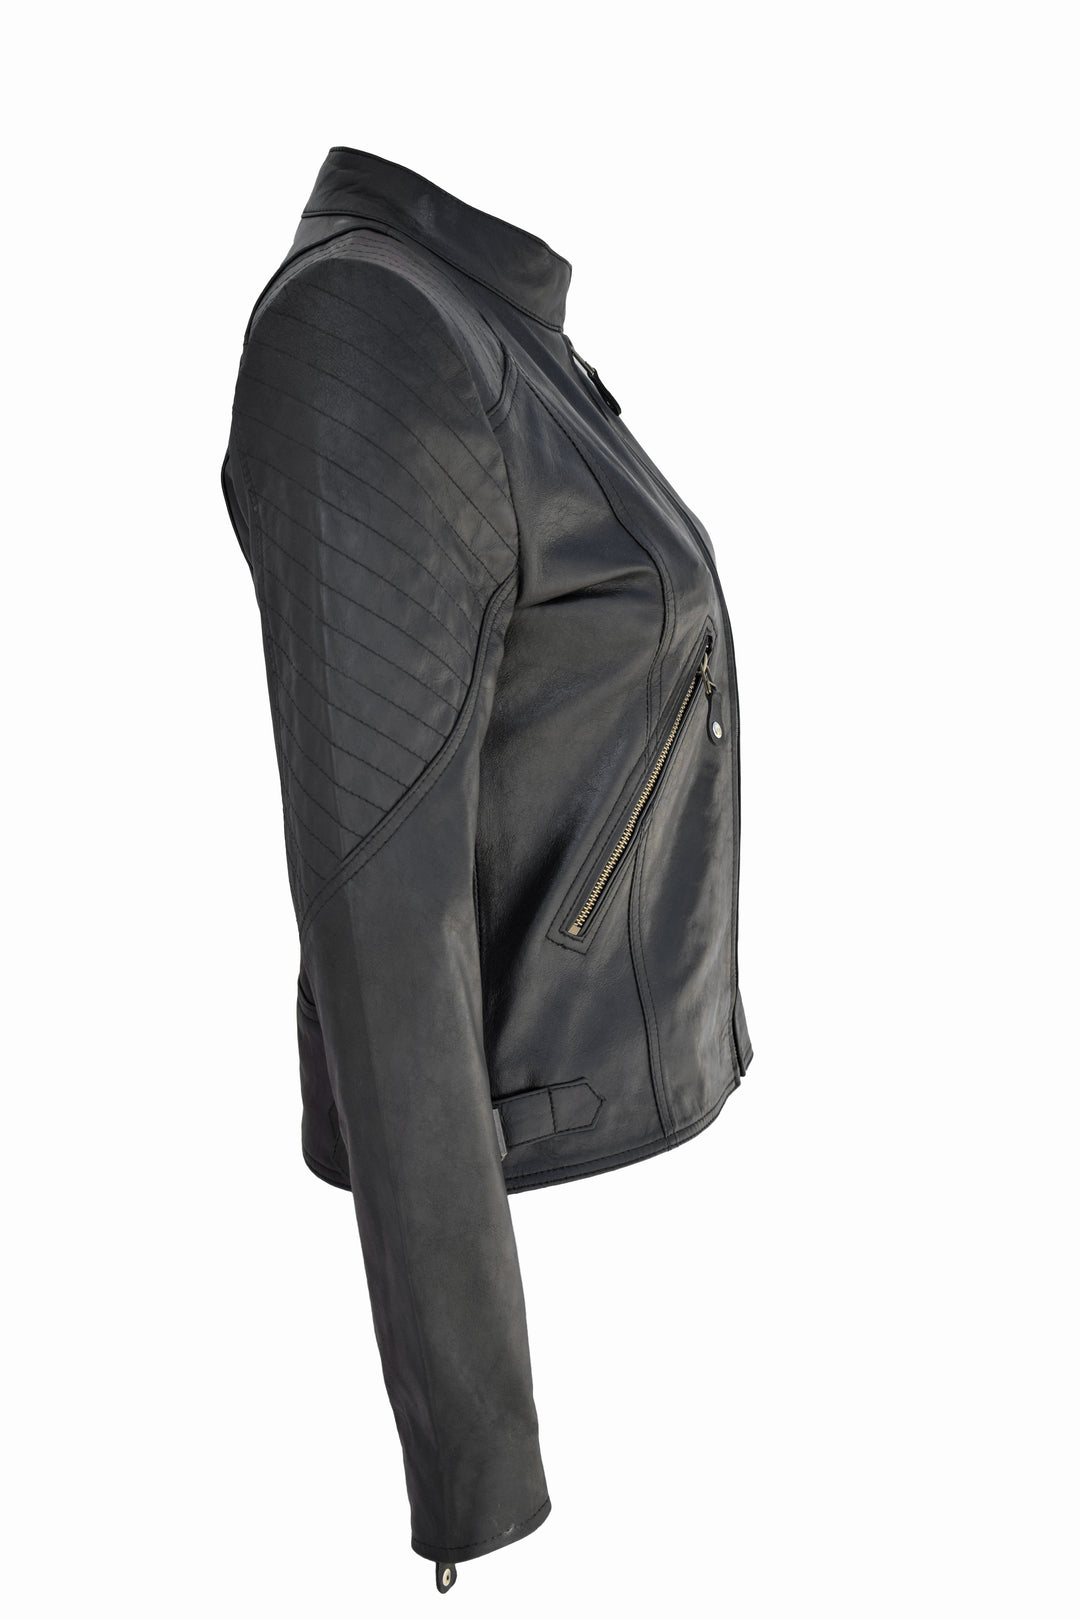 Leather Jacket Women Online